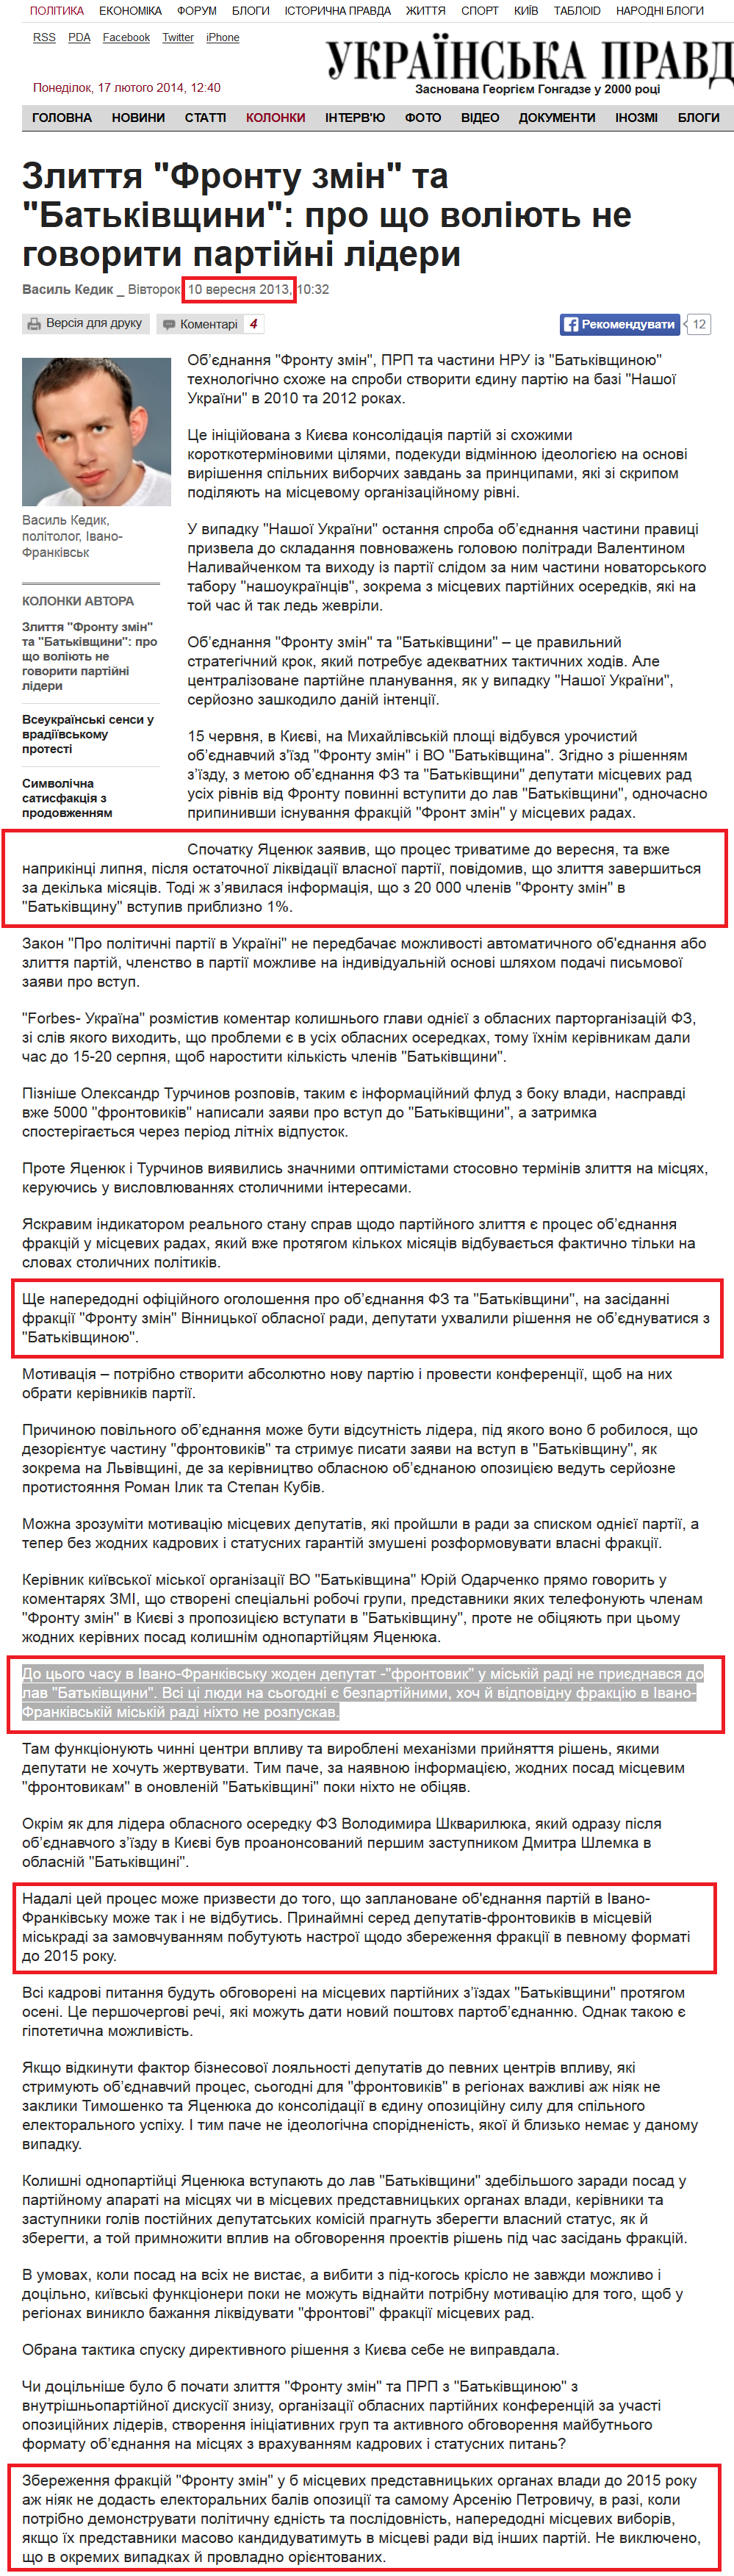 http://www.pravda.com.ua/columns/2013/09/10/6997634/